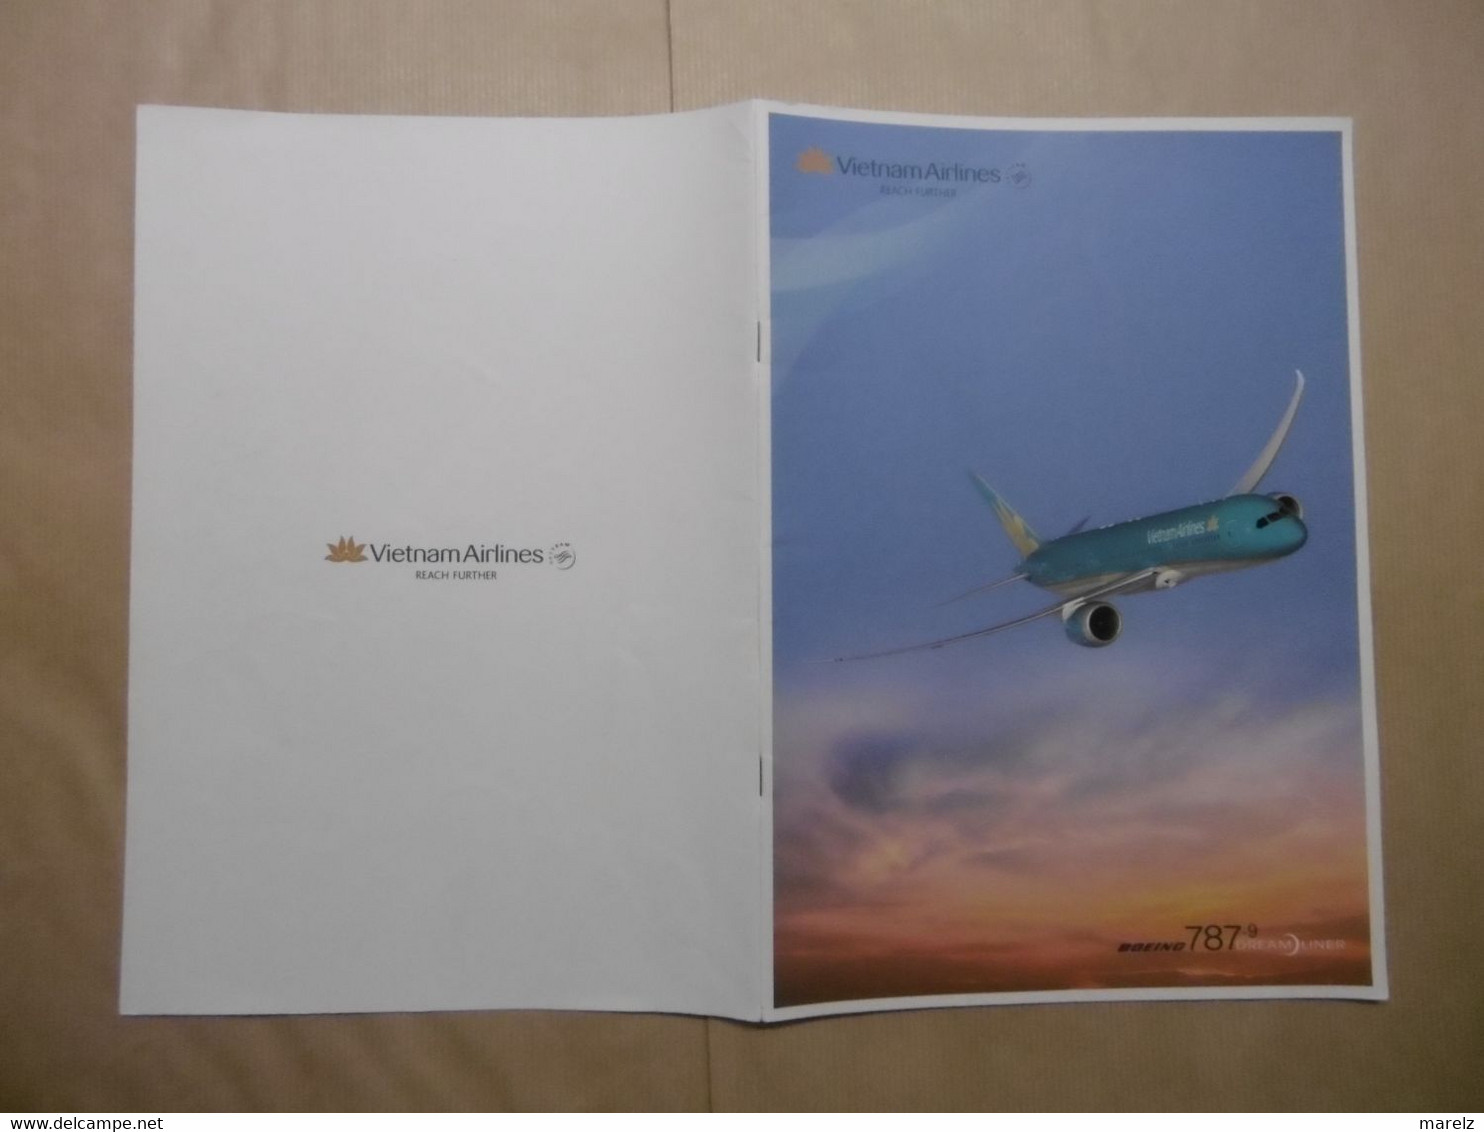 Publicité Compagnie Aérienne VIETNAM AIRLINES Reach Further Boeing 787-9 DREAM LINER - Publicités